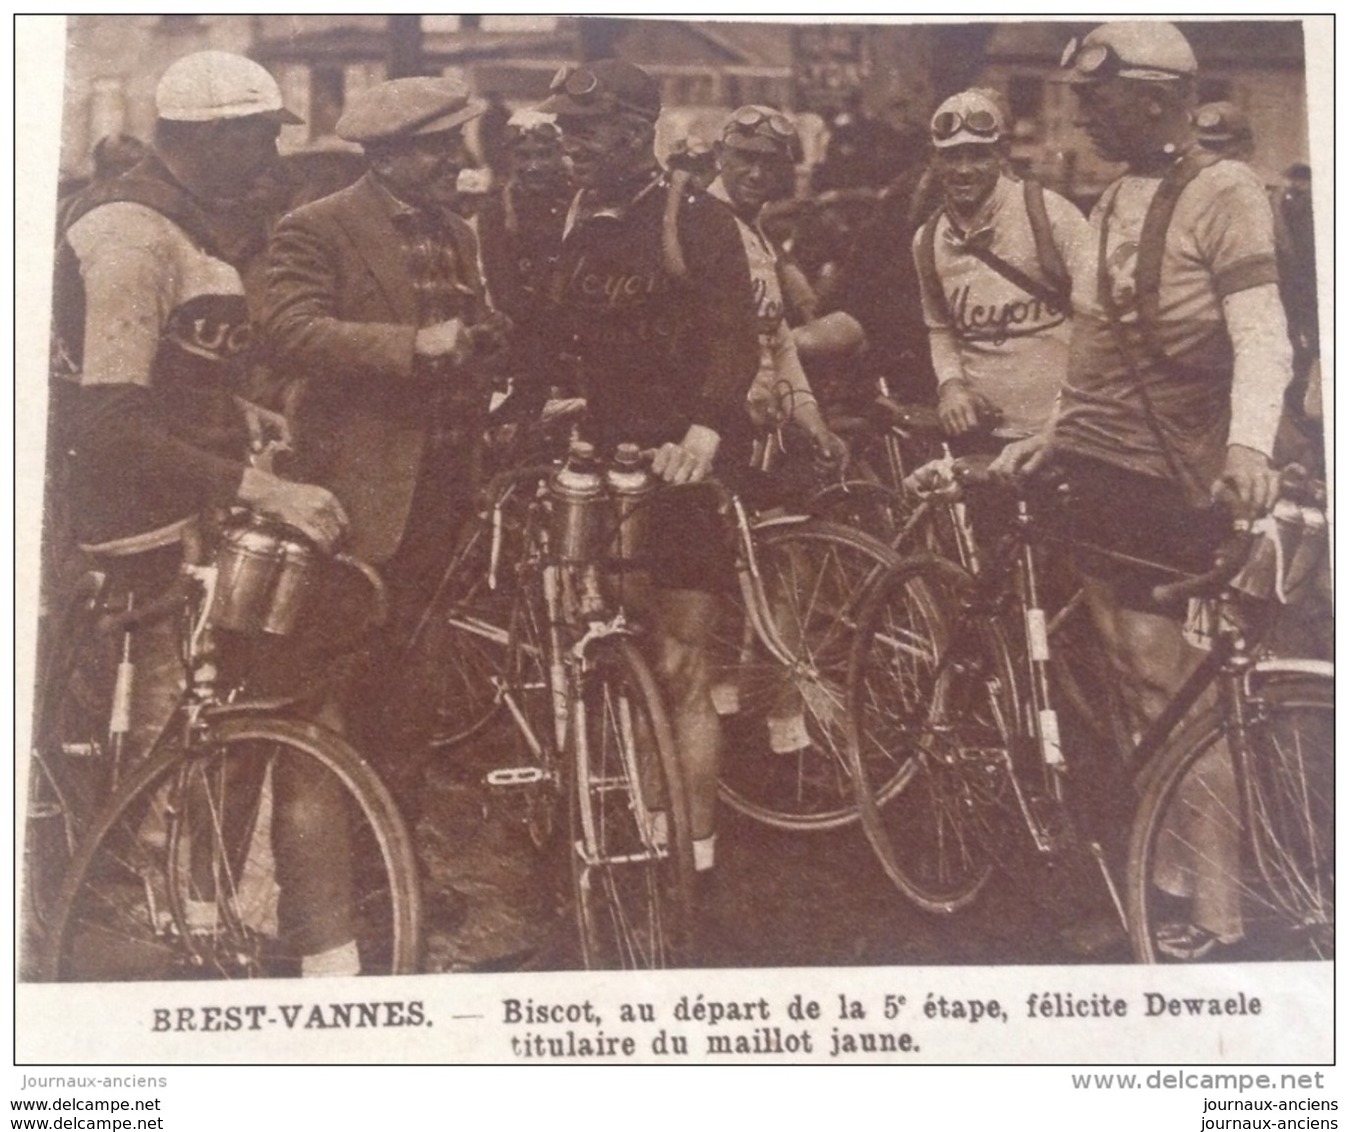 1929 TOUR DE FRANCE - Nicolas FRANTZ - LEDUCQ - FONTAN - CHERBOURG - VALOGNES - BRIQUEBEC - LA HAYE DU PUITS - DESGRANGE